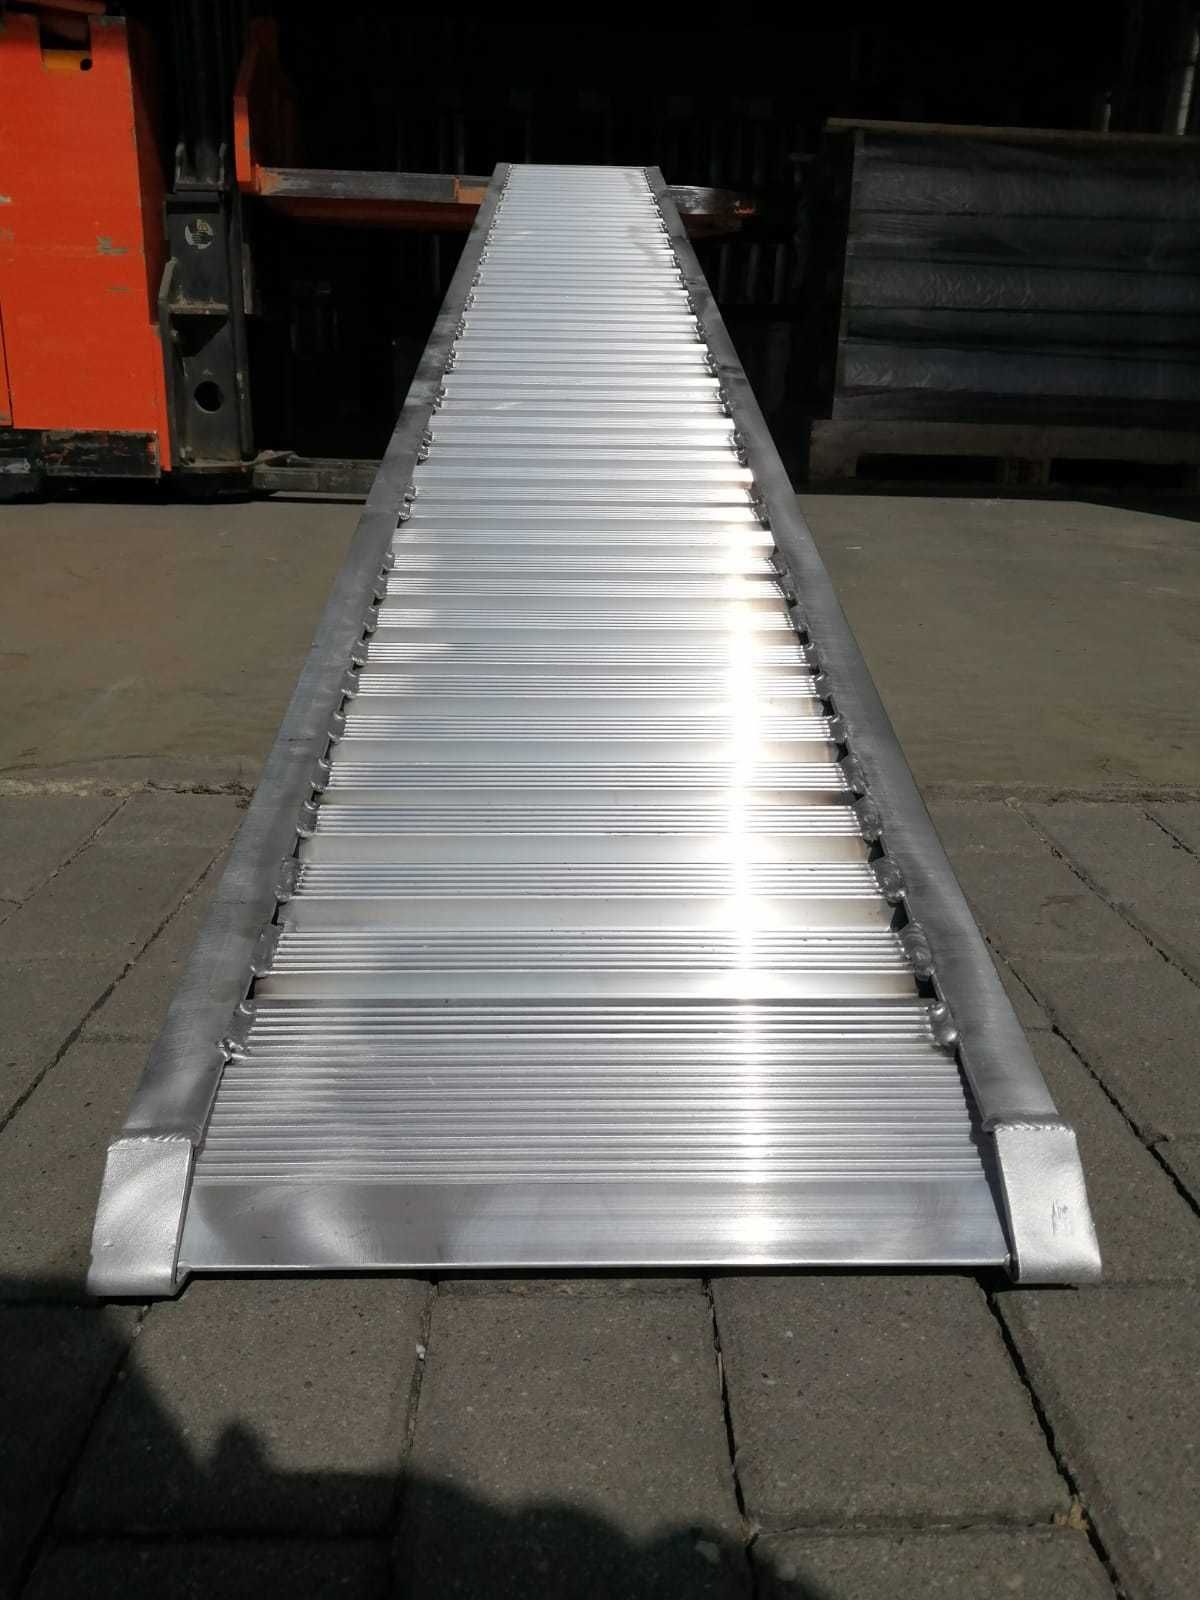 Najazdy aluminiowe komplet 3m/2500kg i wiele innych, rozmiary w opisie